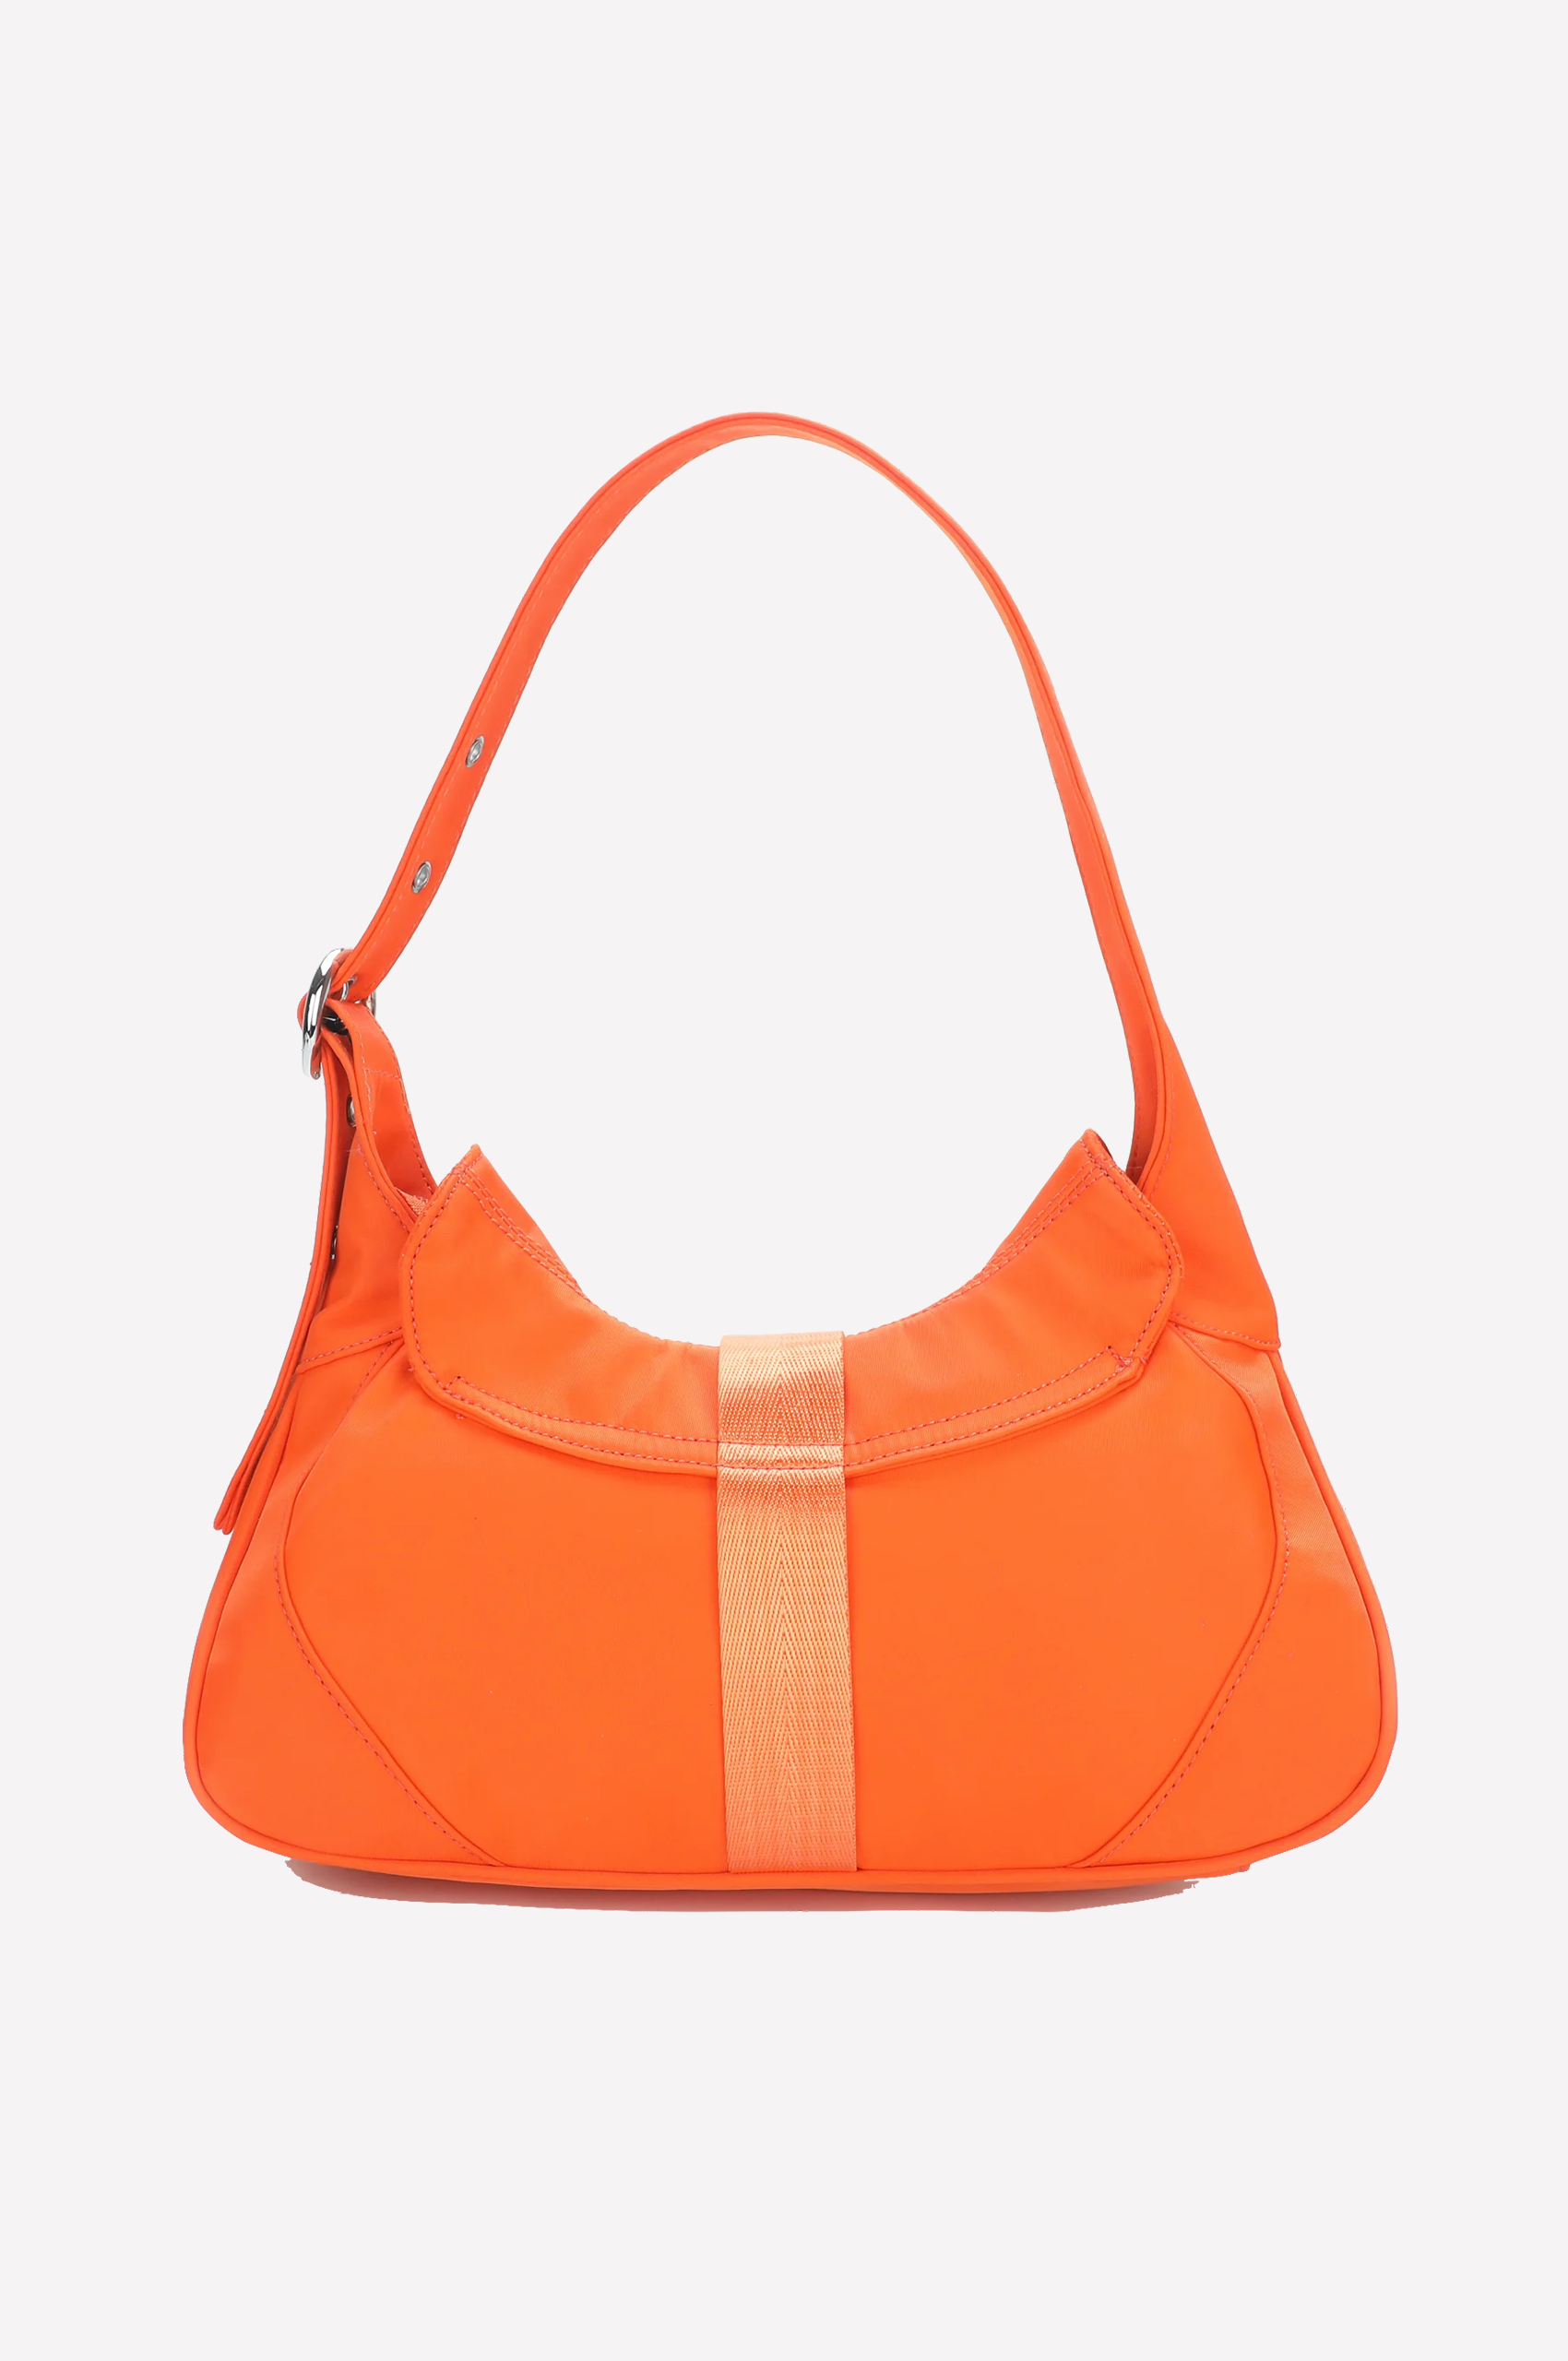 SILFEN Thea Handtasche in Orange, Ansicht Hinten